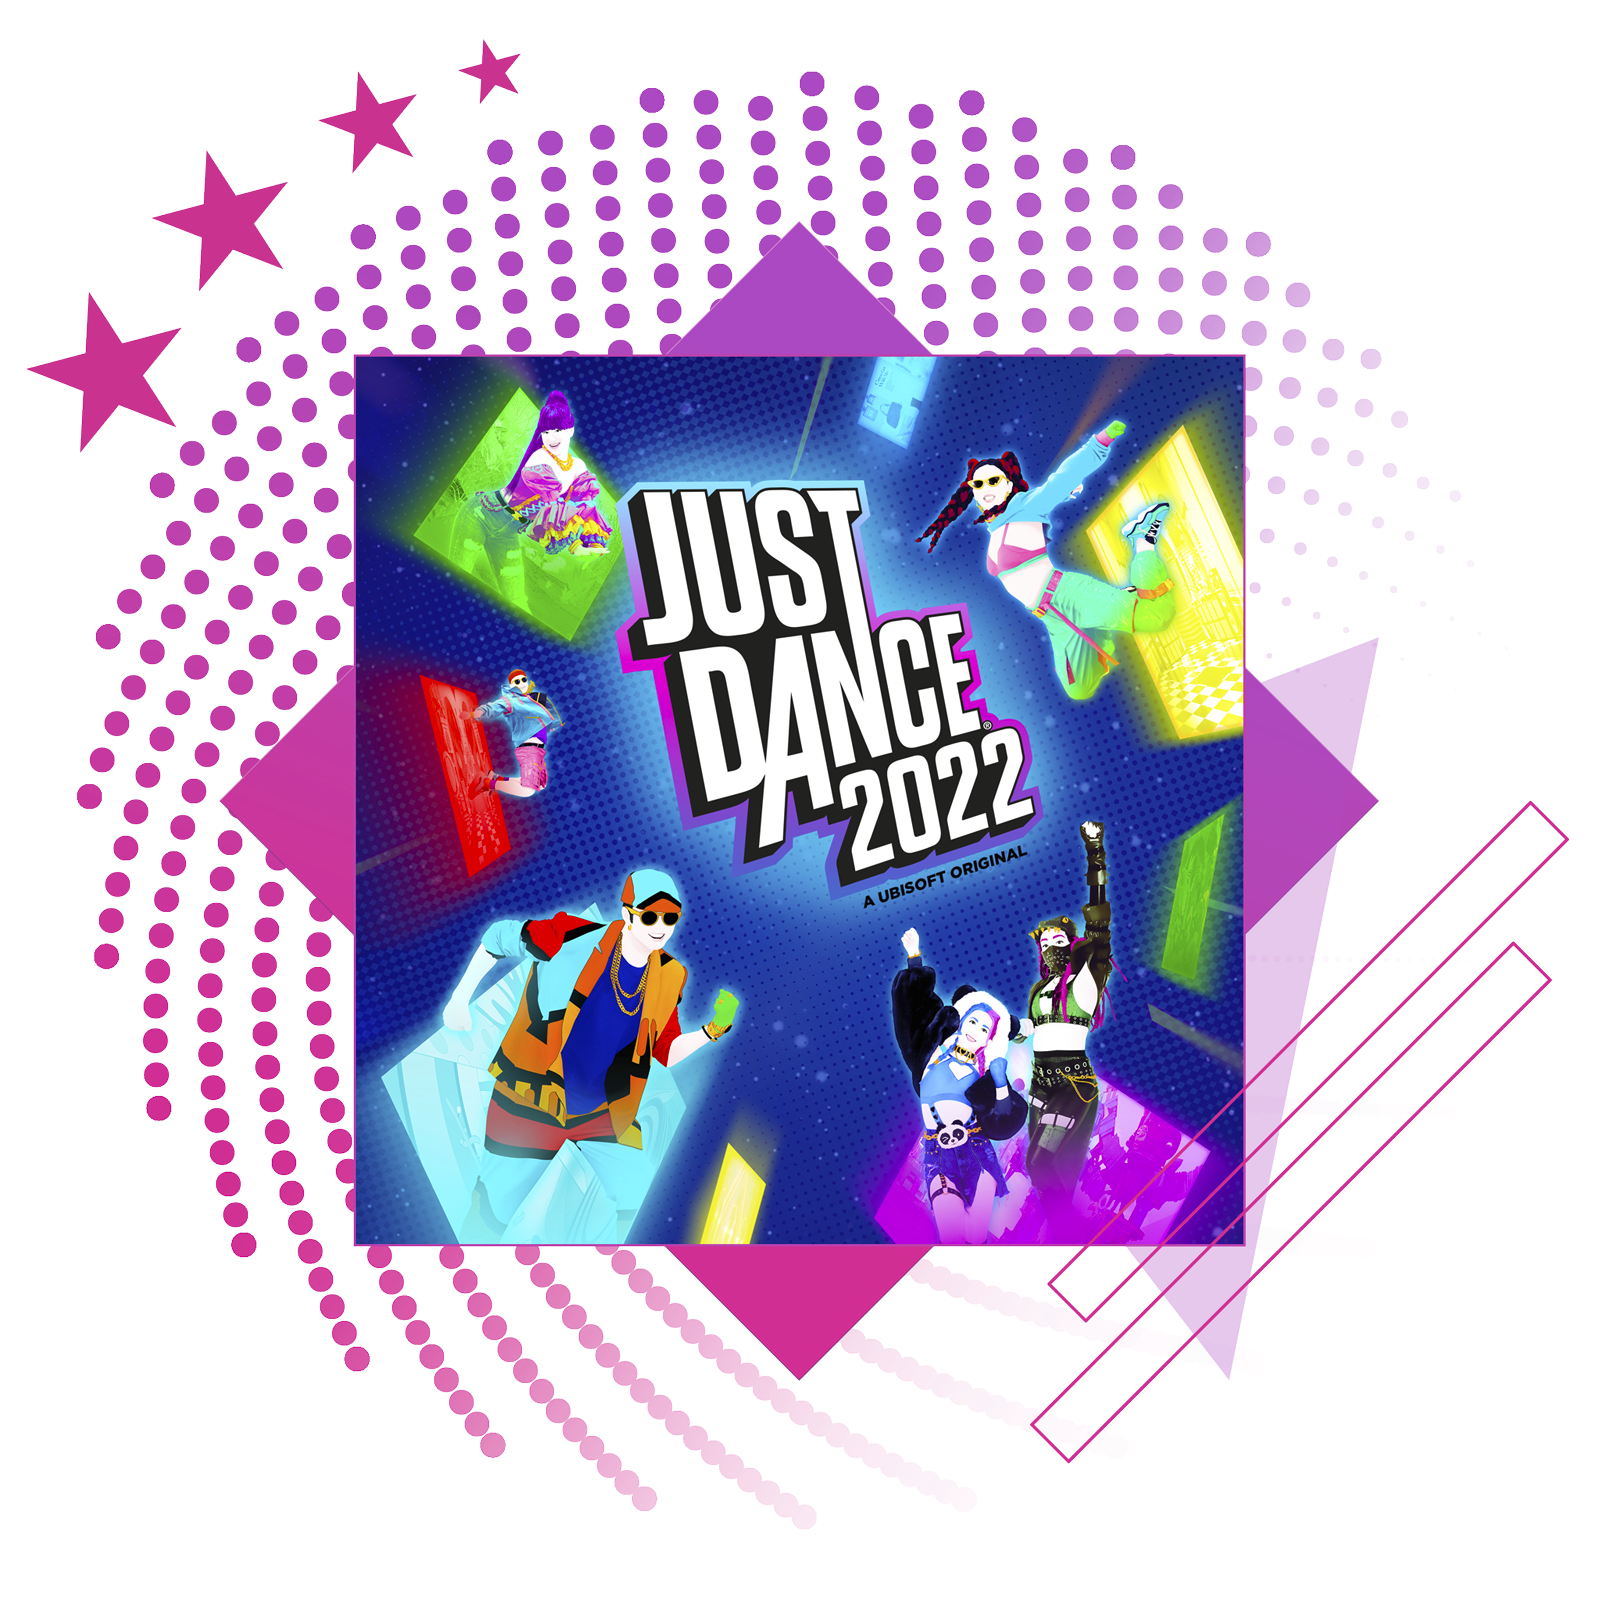 Image de présentation des meilleurs jeux de rythme, avec des illustrations et du gameplay clés de Just Dance 2022.